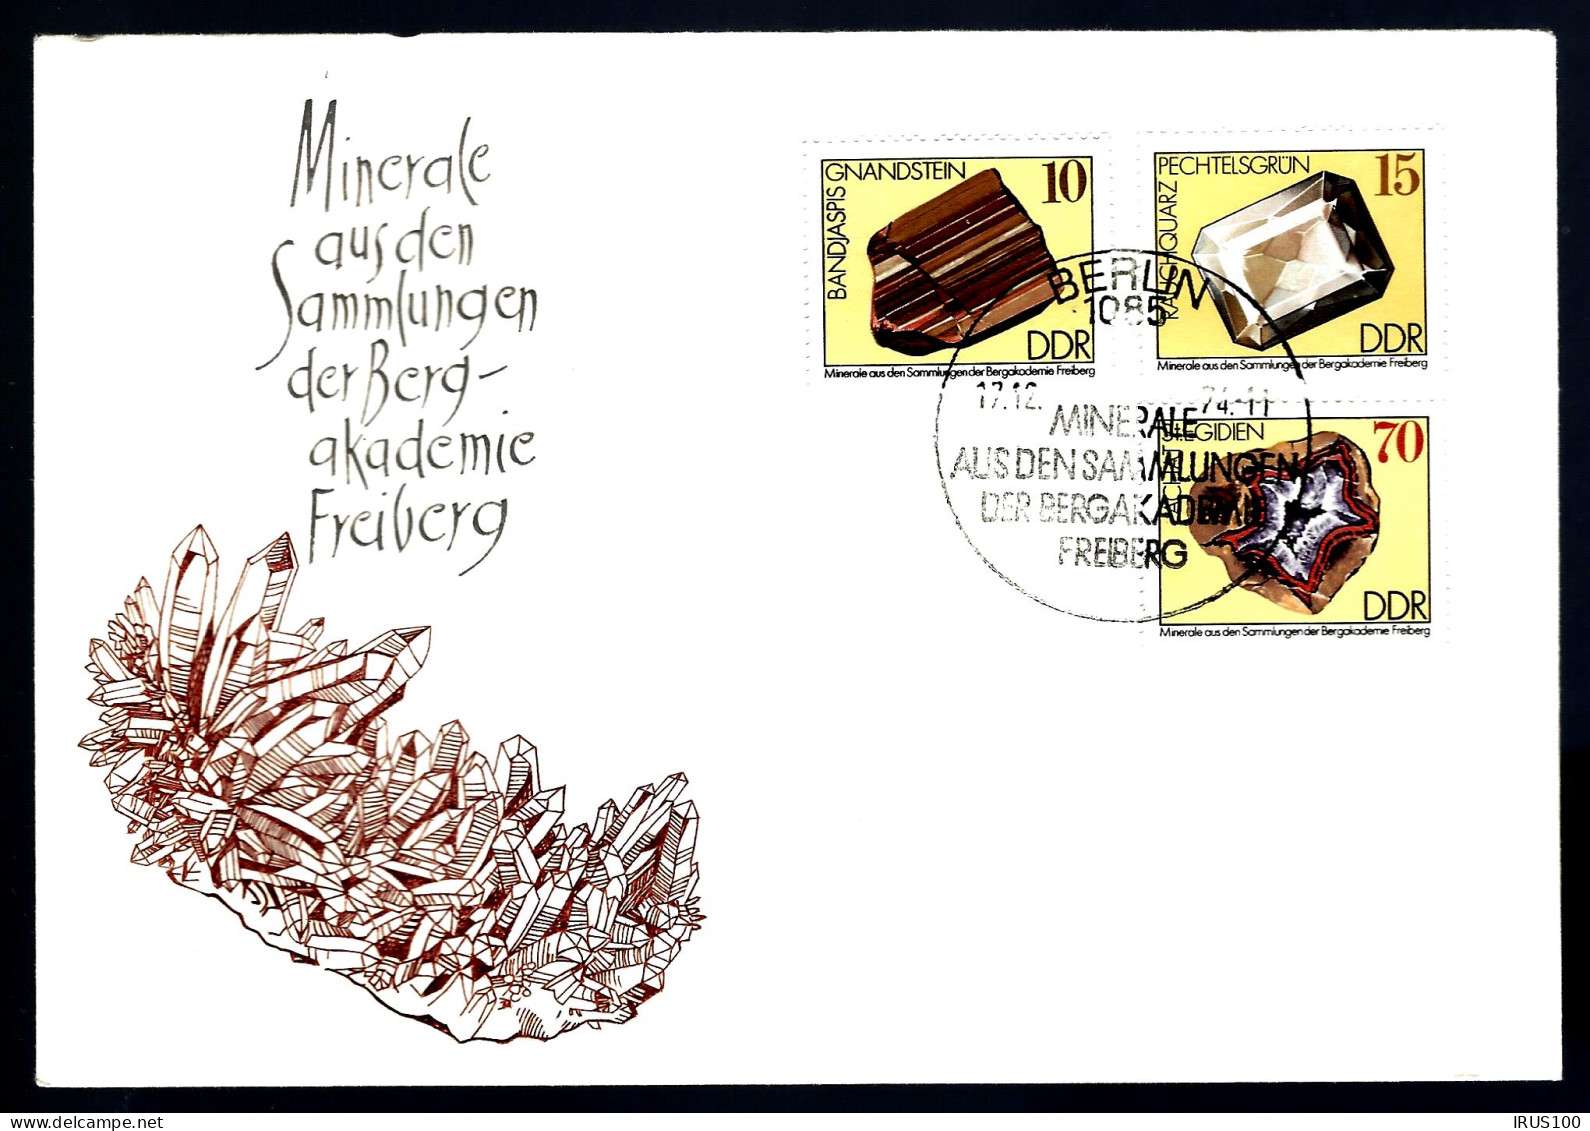 MINÉRAUX - COLLECTION DE LA BERG-AKADEMIE - FRIBOURG - 2 ENVELOPPES - Minerales